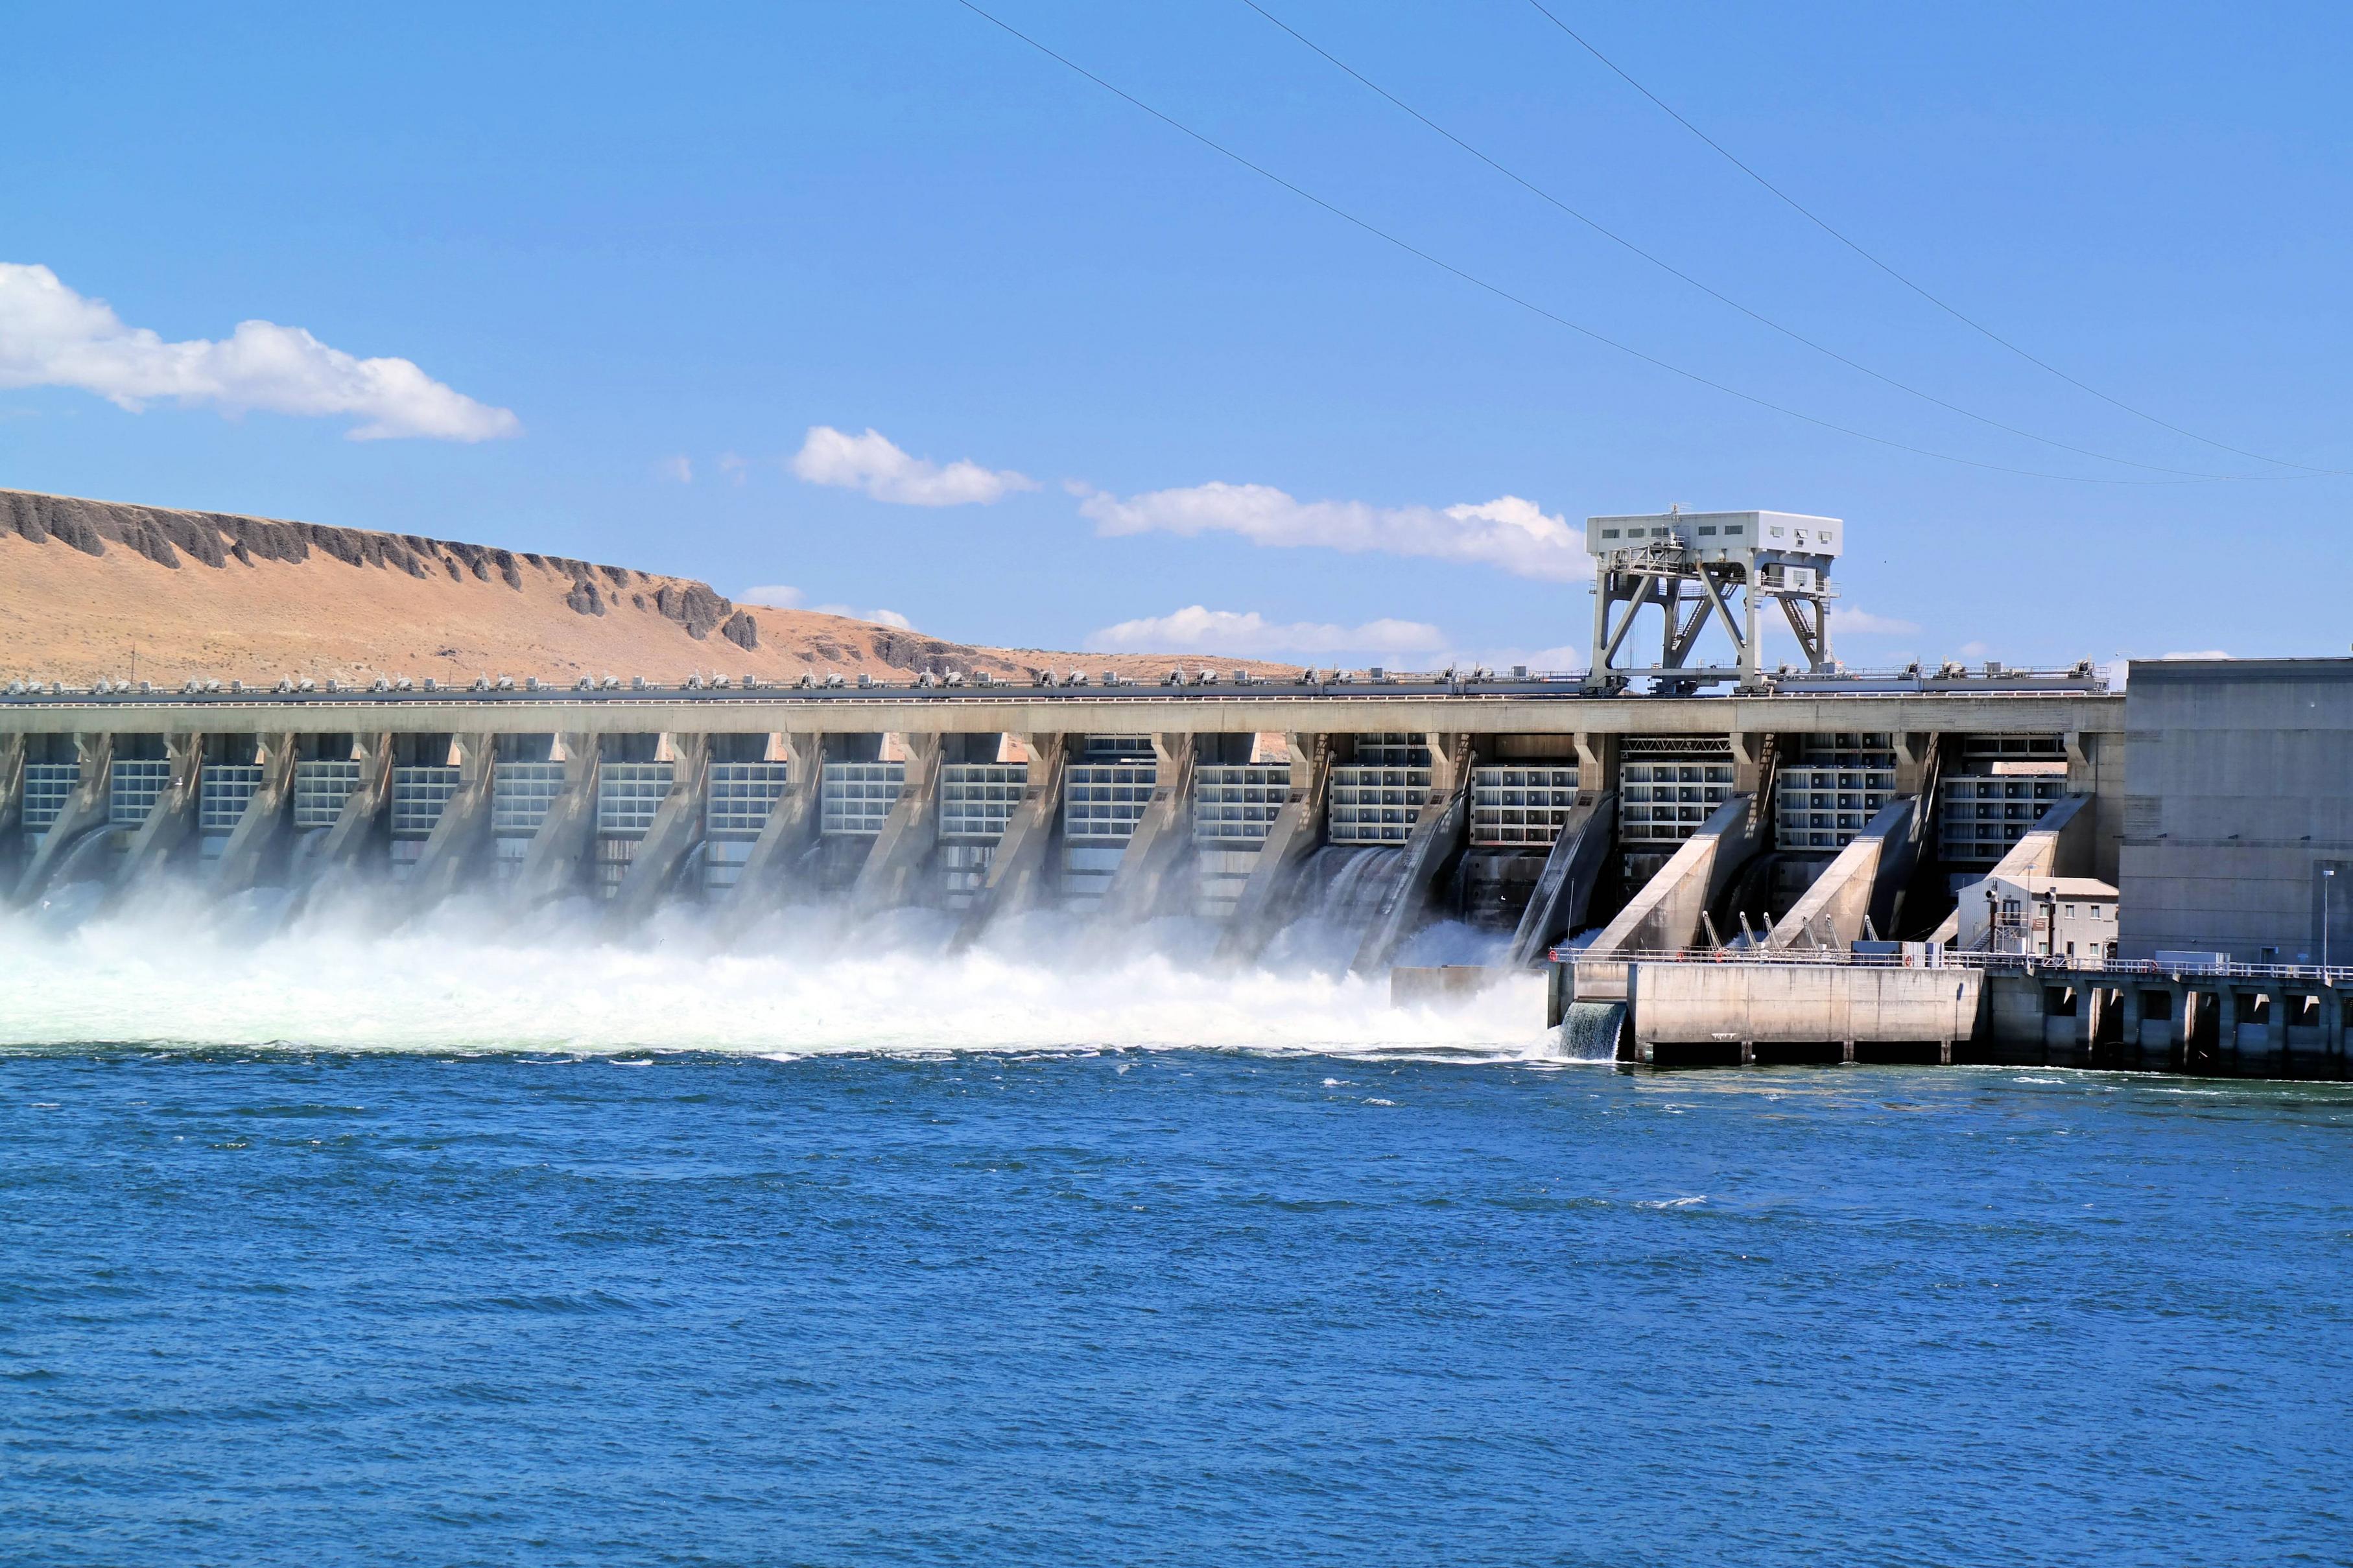 能源與水資源相互依存度高，水力發電提供能源部門的電力供給以及冷卻服務，能源則是水資源部門的重要動力來源